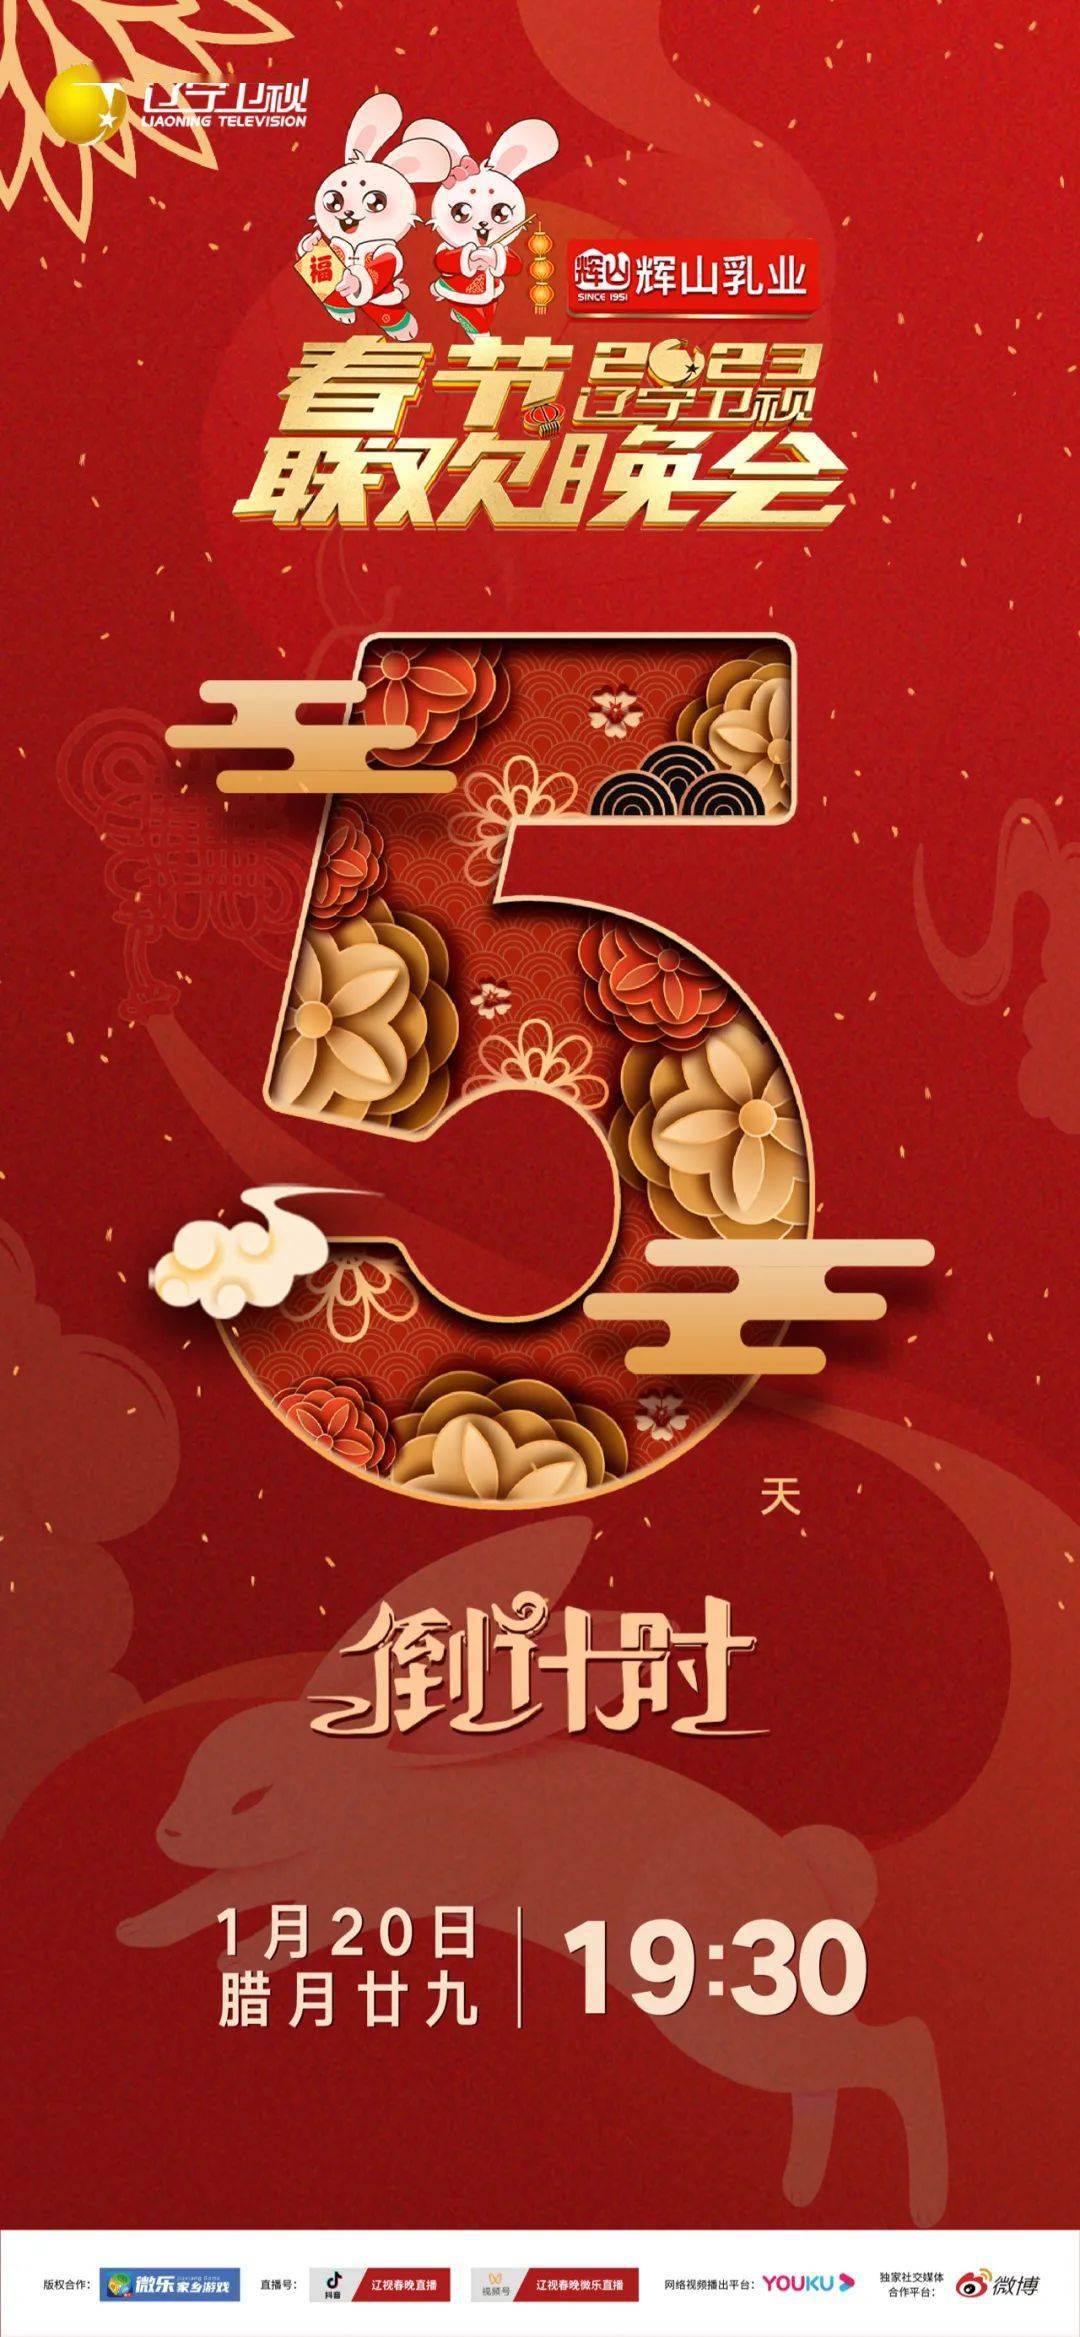 1月14日农历腊月二十三,辽宁卫视春晚倒计时特别节目《欢乐家乡年》